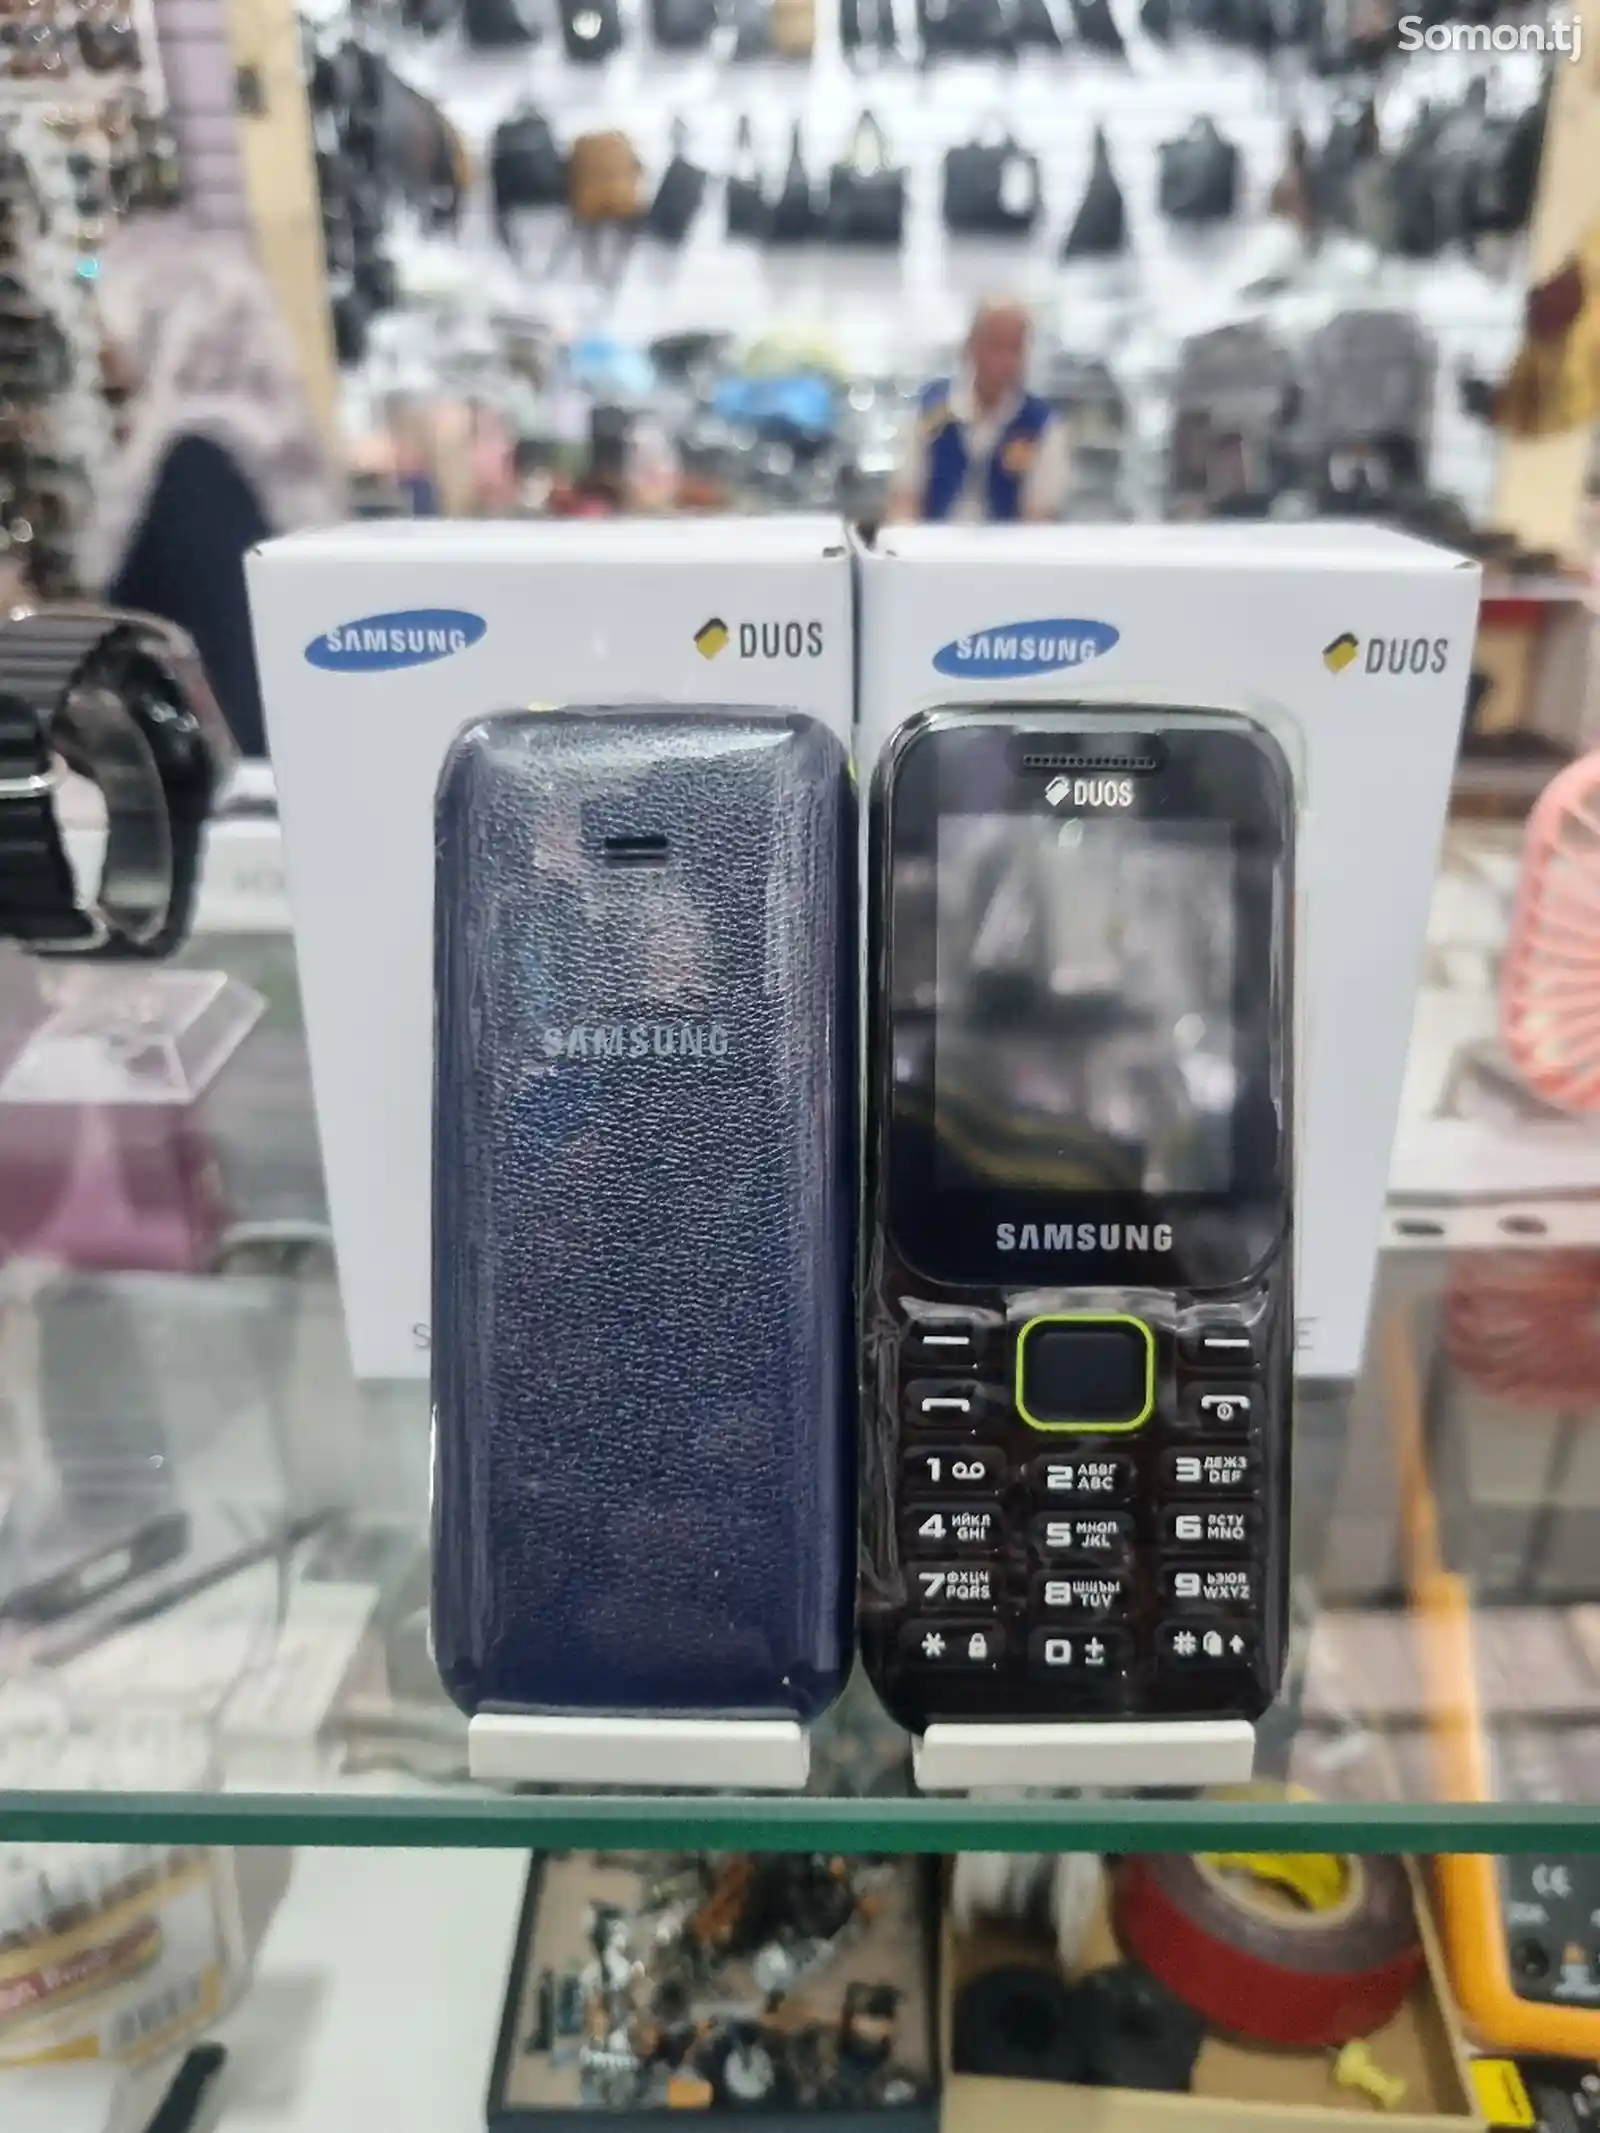 Samsung B310E-7